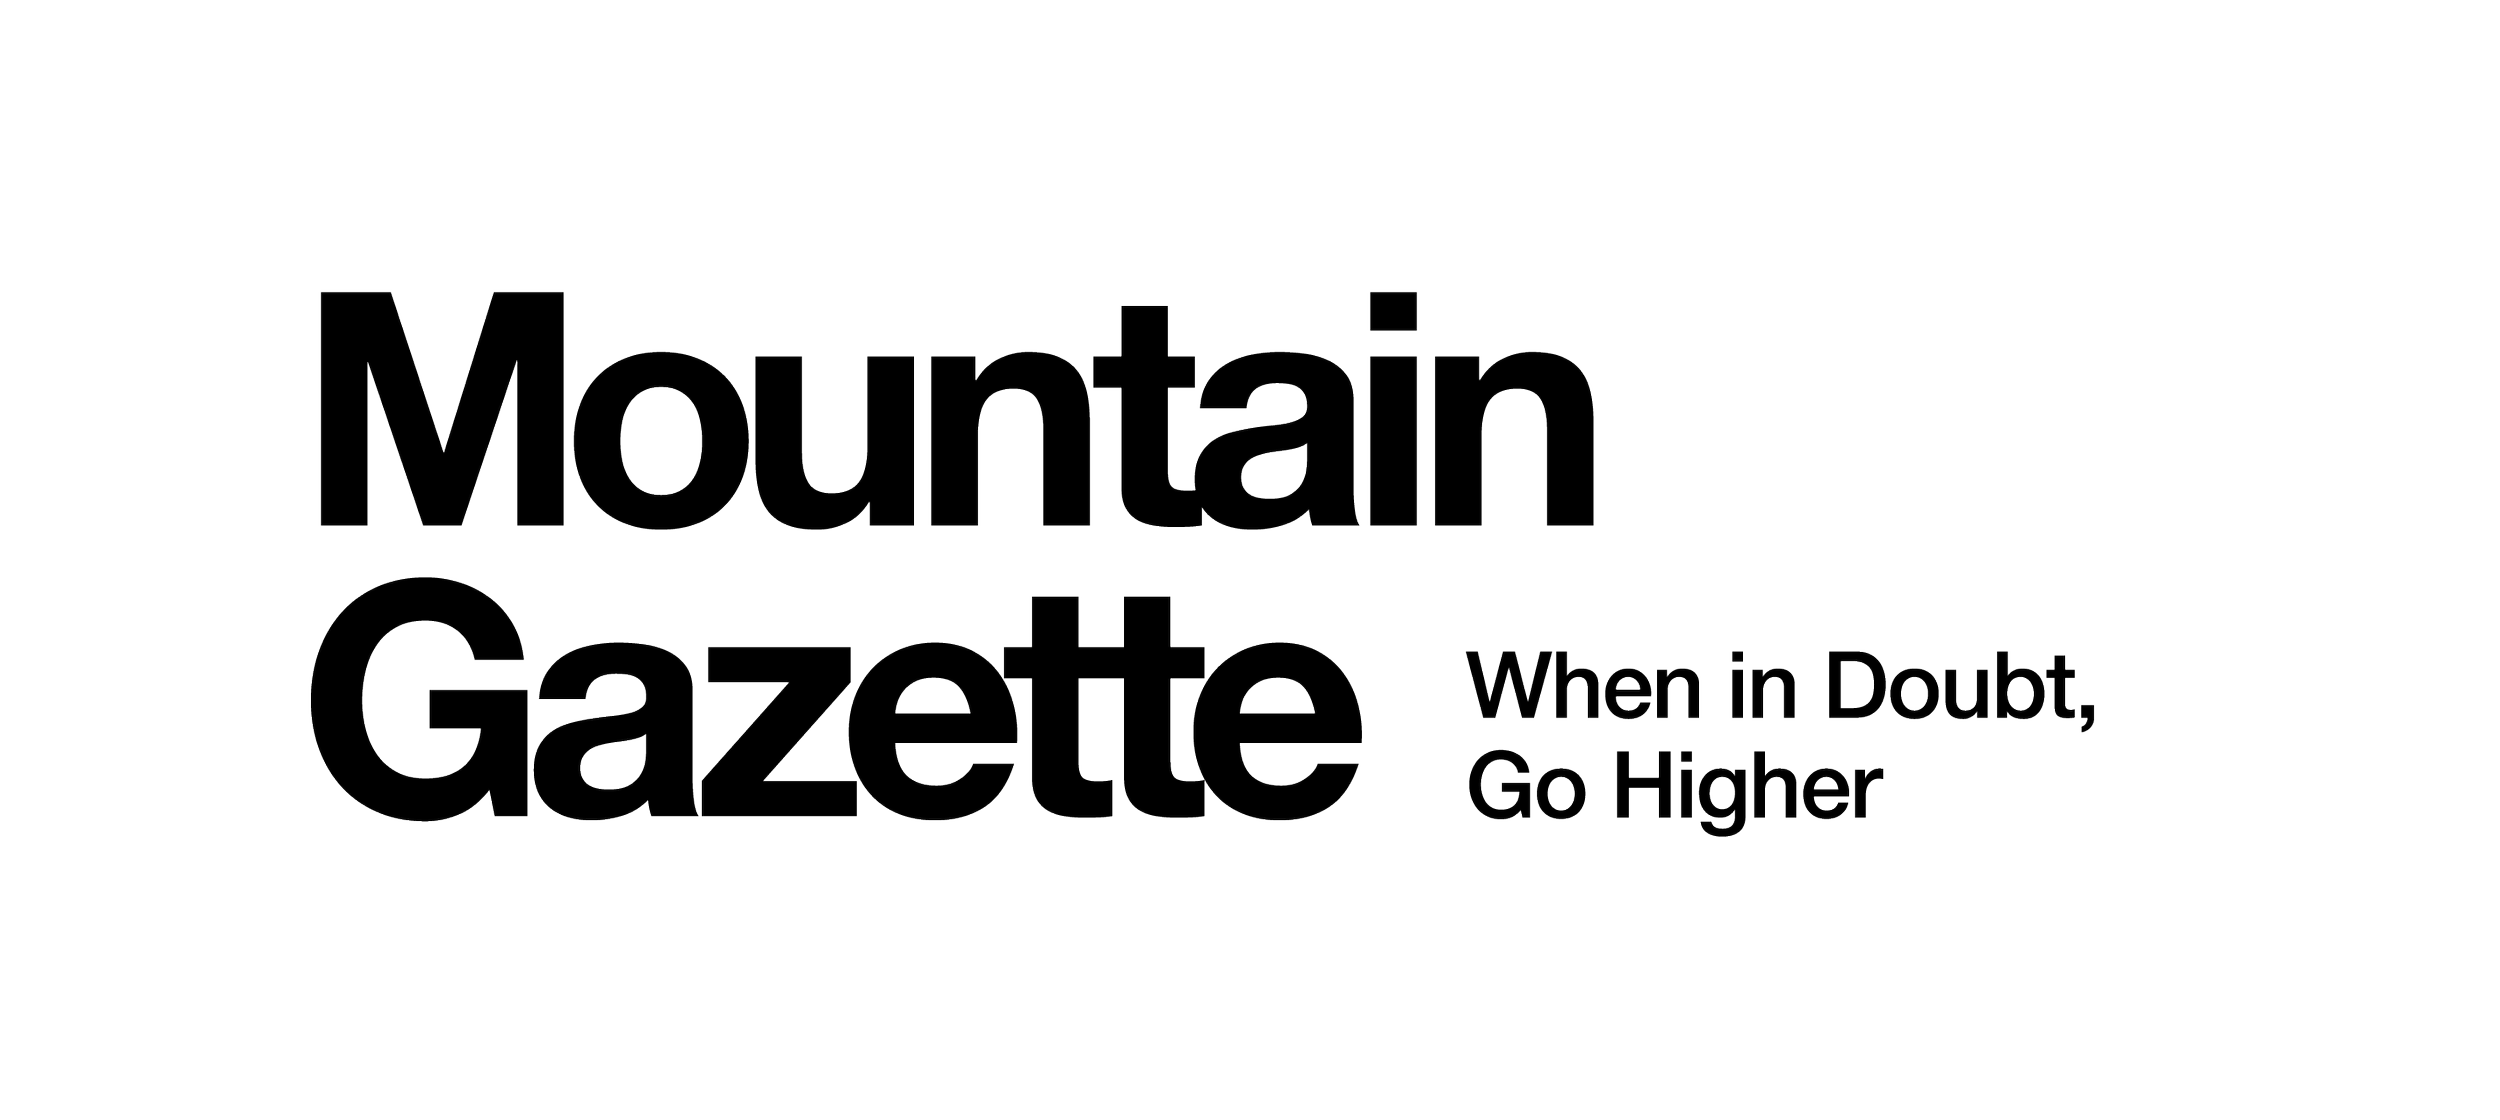 MountainGazette_Logo_WIDGH (1).png